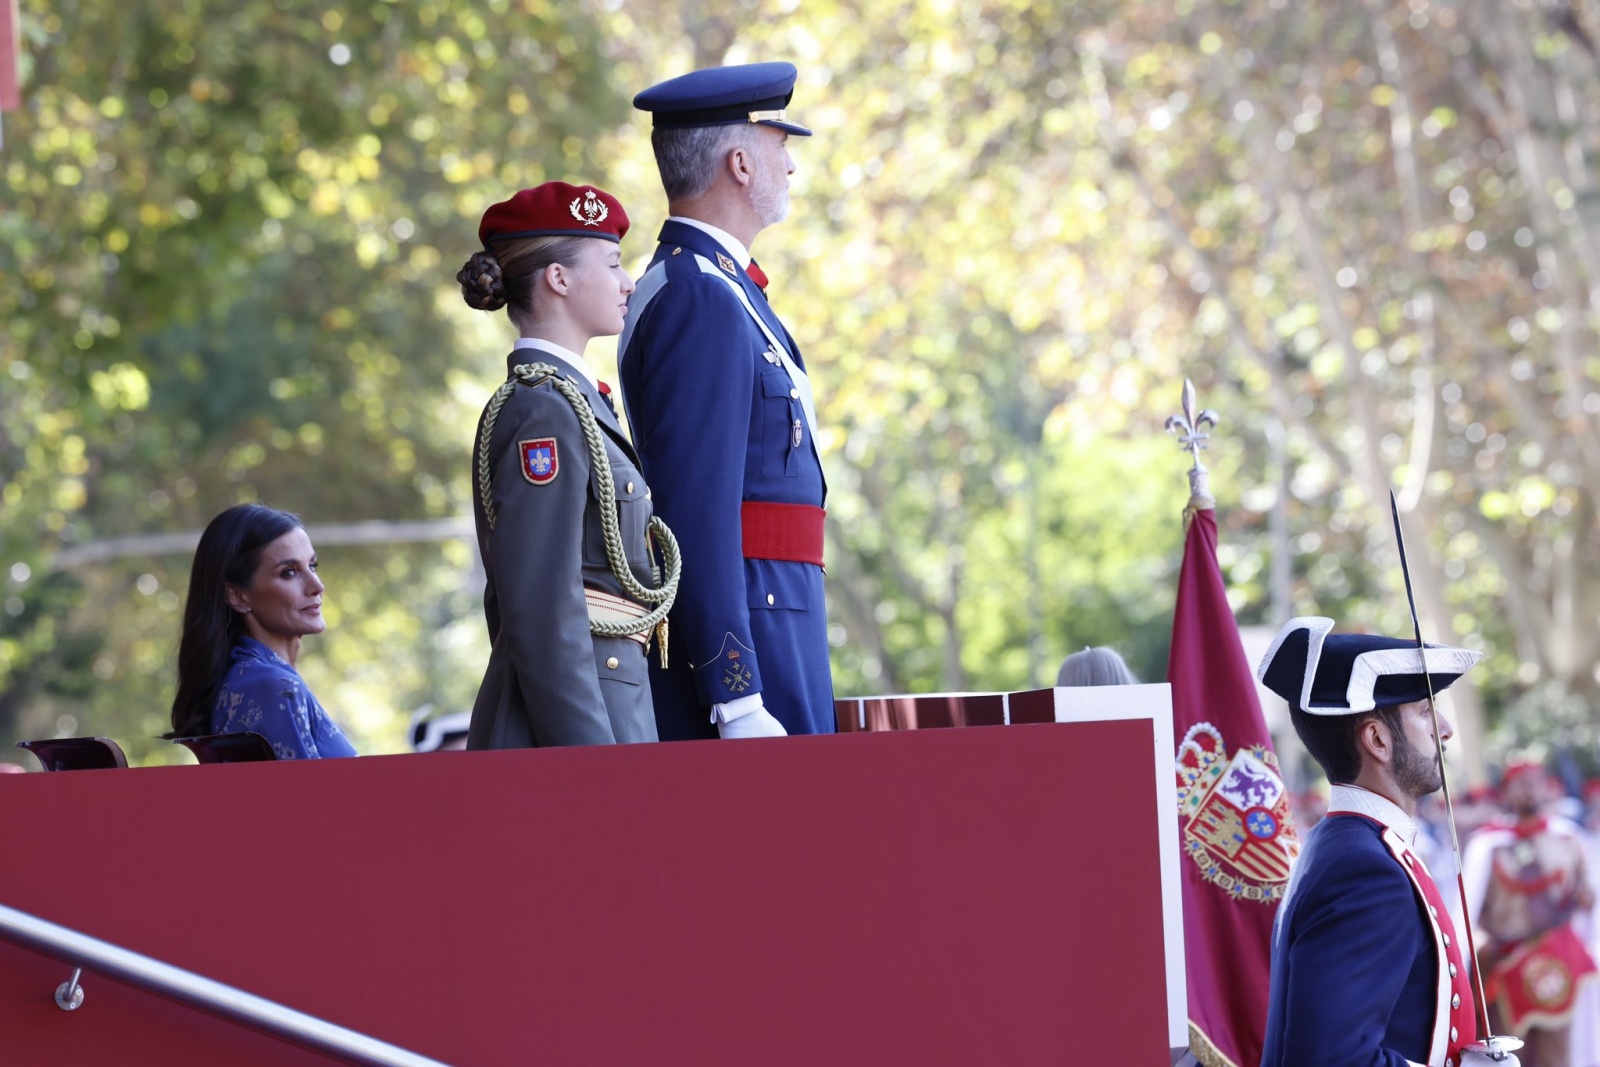 O que vestiram Letizia e a princesa Leonor no Dia Nacional de Espanha